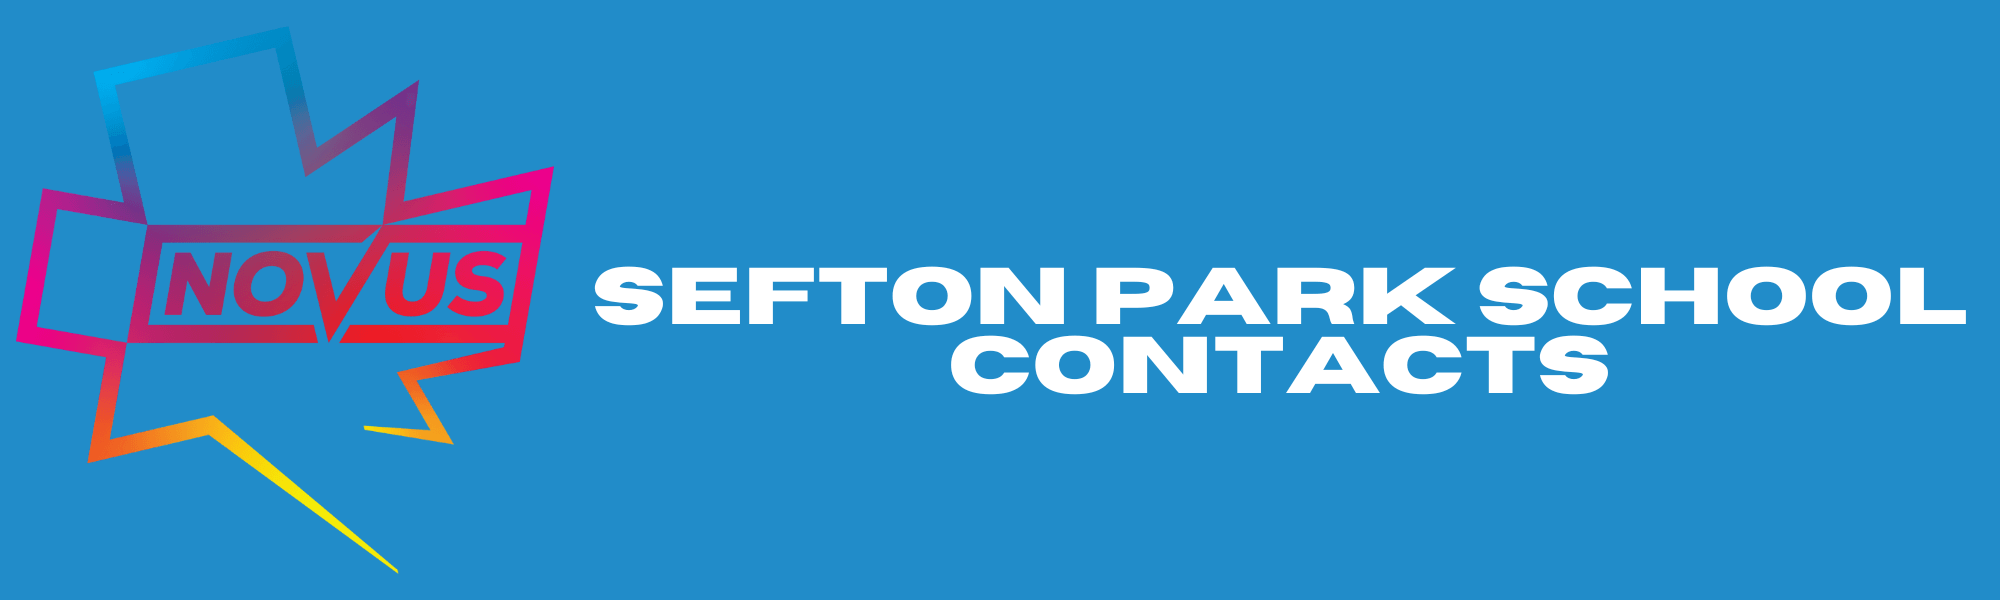 Sefton Park School Contacts